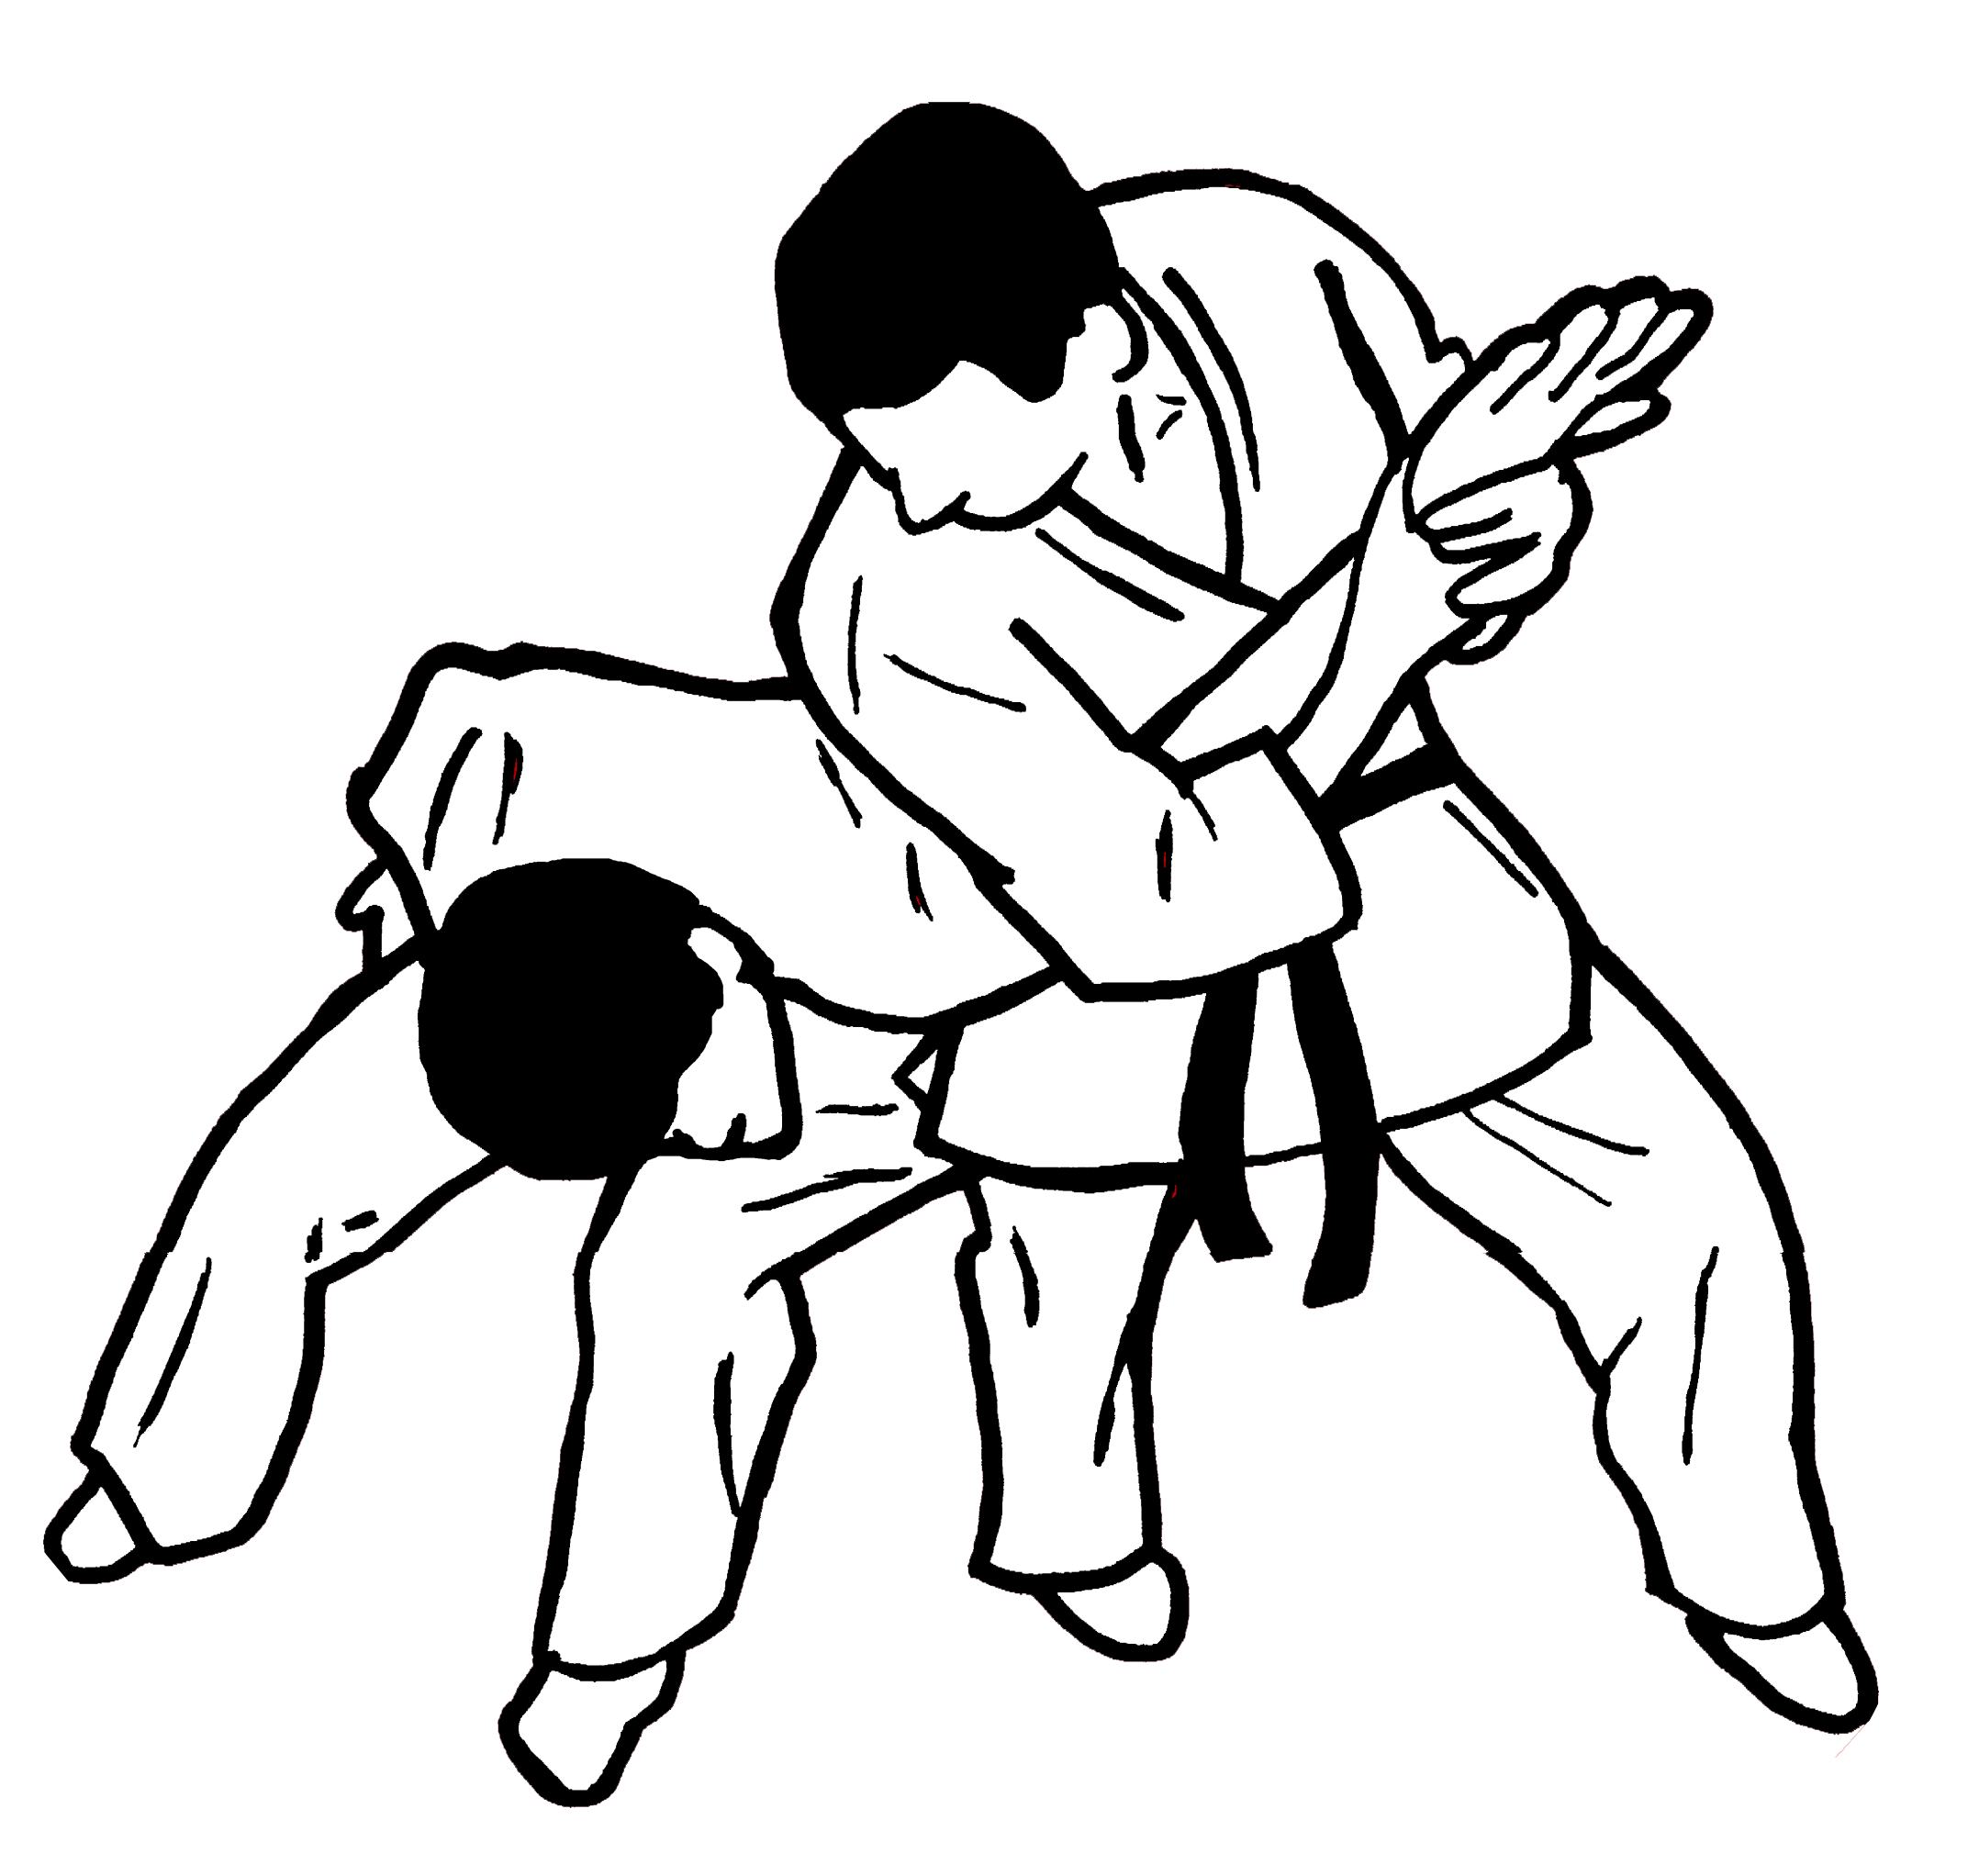 Brazilian Jiu Jitsu Jujutsu Self Defense Taebaek Trixe2ngulo Taekwondo